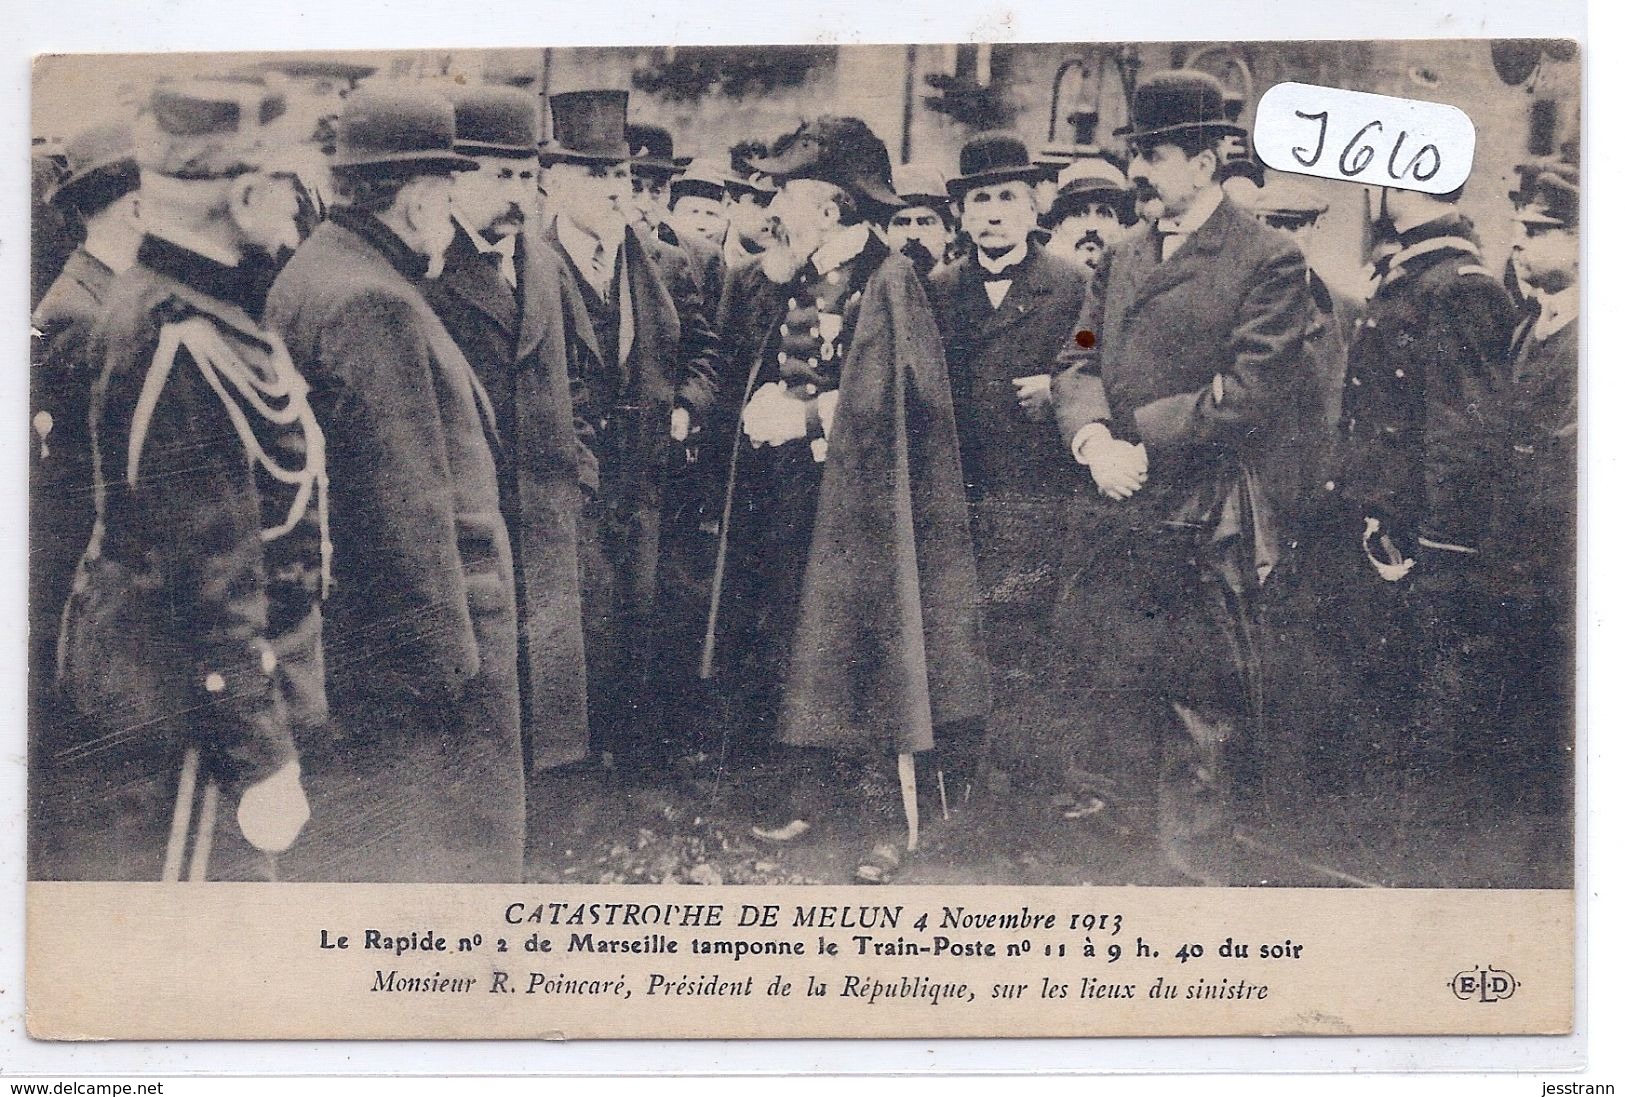 MELUN- CATASTROPHE FERROVIAIRE- 4.11.1913- MR POINCARE-PRESIDENT DE LA REPUBLIQUE-SUR LES LIEUX DU SINISTRE- ELD - Melun